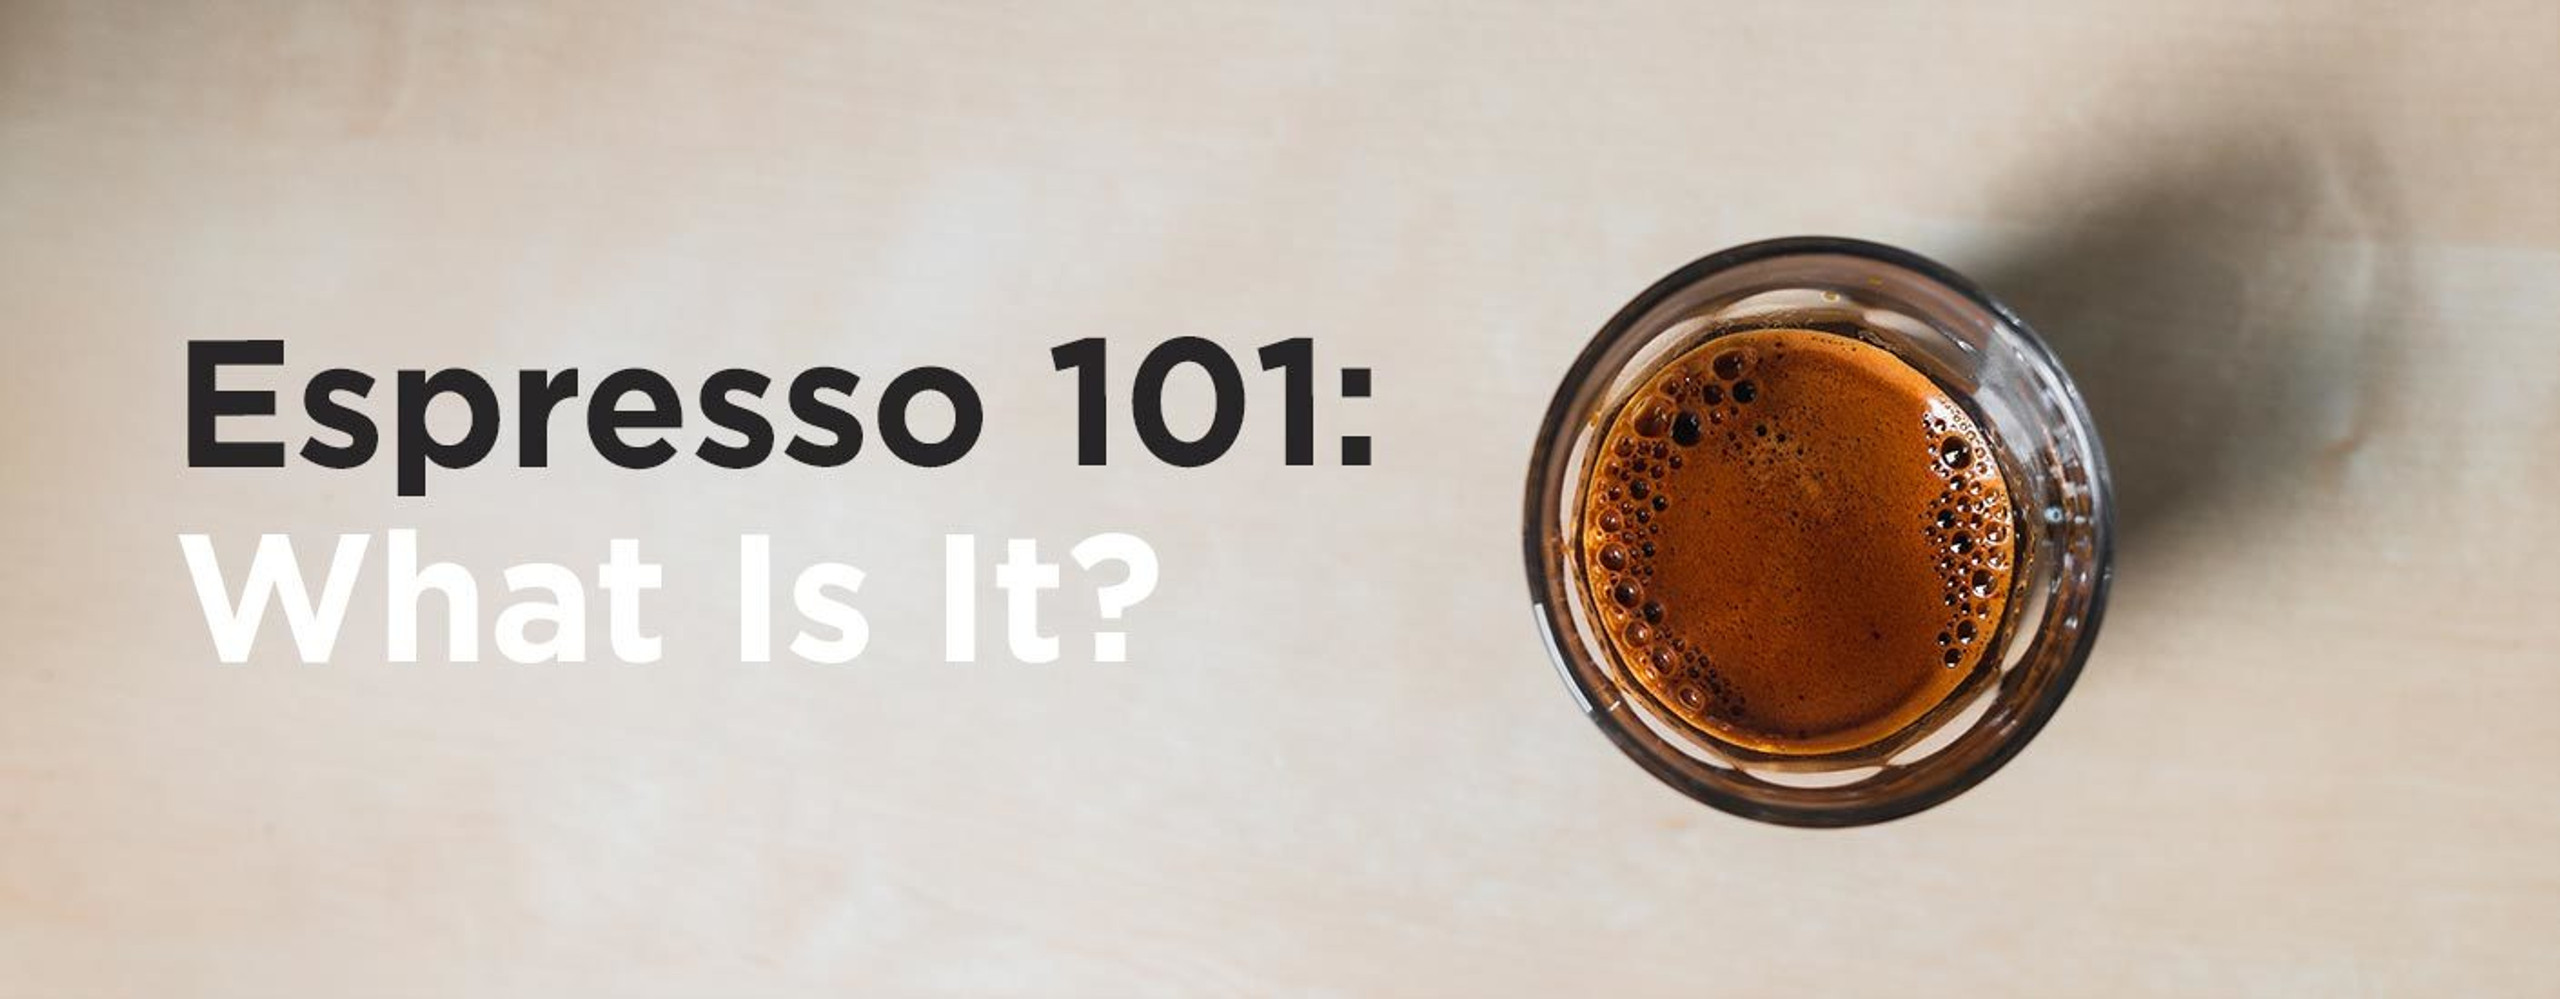 Espresso 101: How Do I Get Started With Espresso?